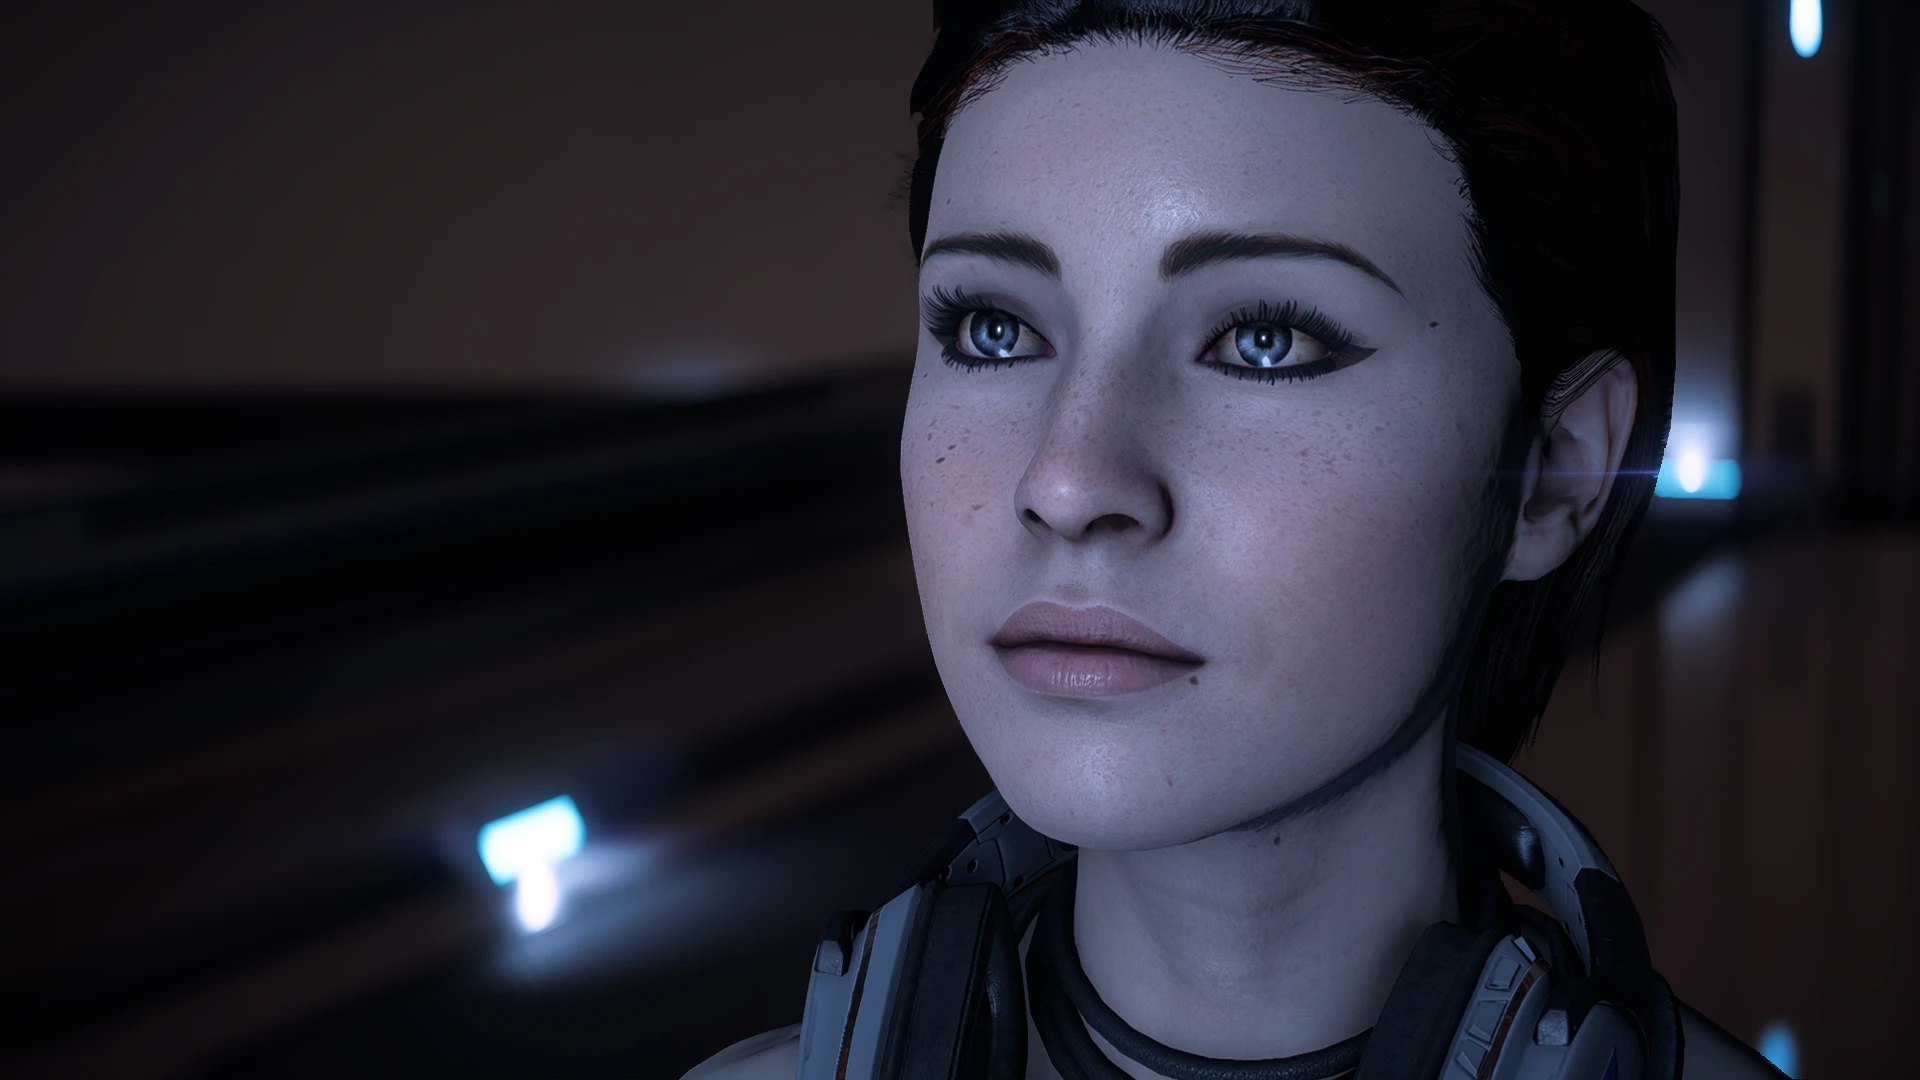 Rebel Ryder Interview. Andromeda stories. 3 D model Sara Ryder nude of Mass Effect Andromeda. Rebel ryder